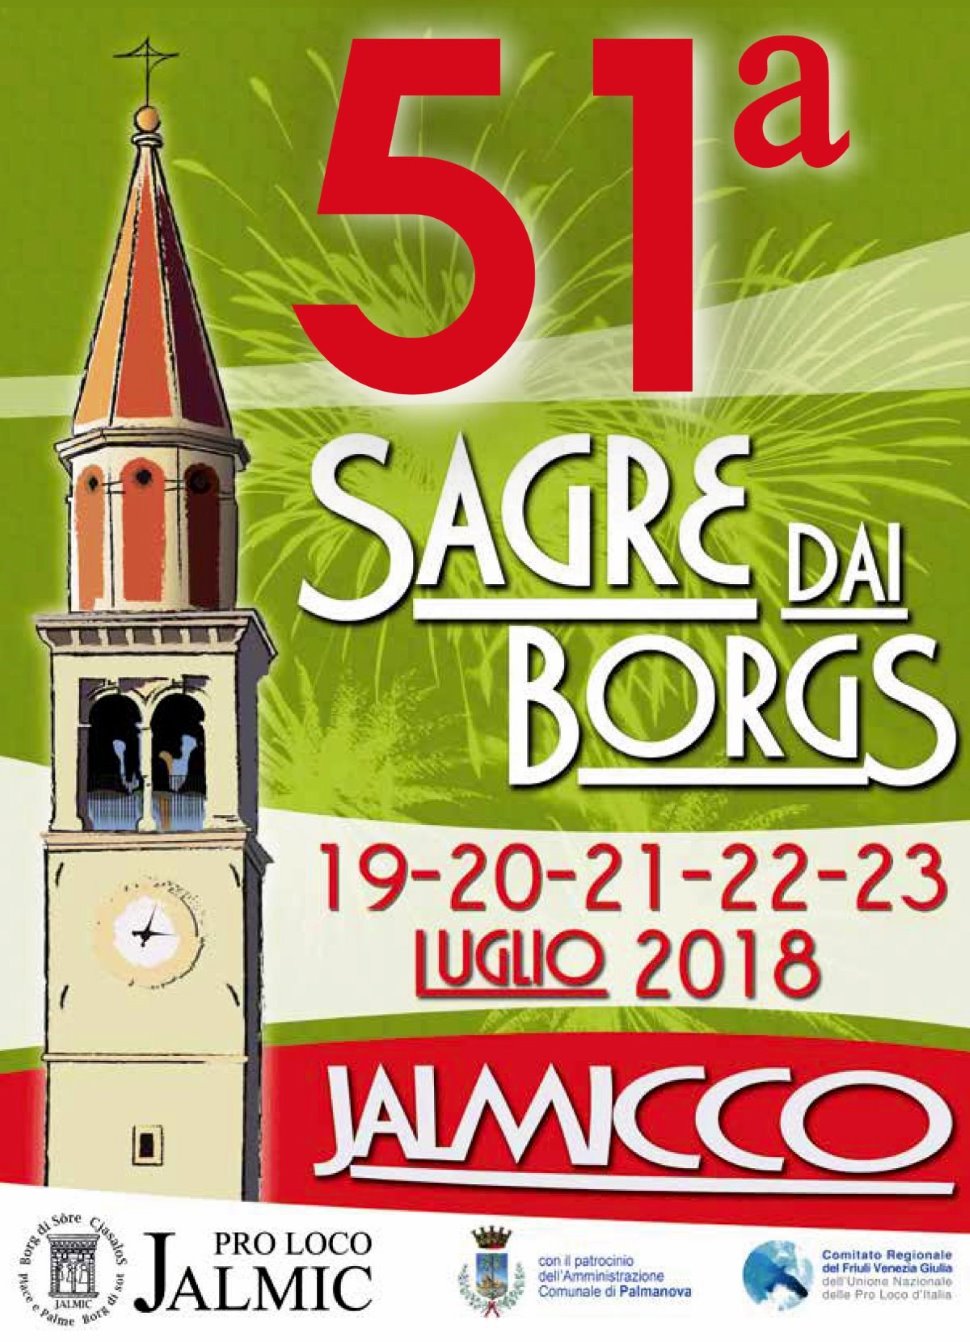 51° SAGRE DAI BORGS – JALMICCO
Sagra paesana tradizionale
dal 19 luglio 2018 al 23 luglio 2018